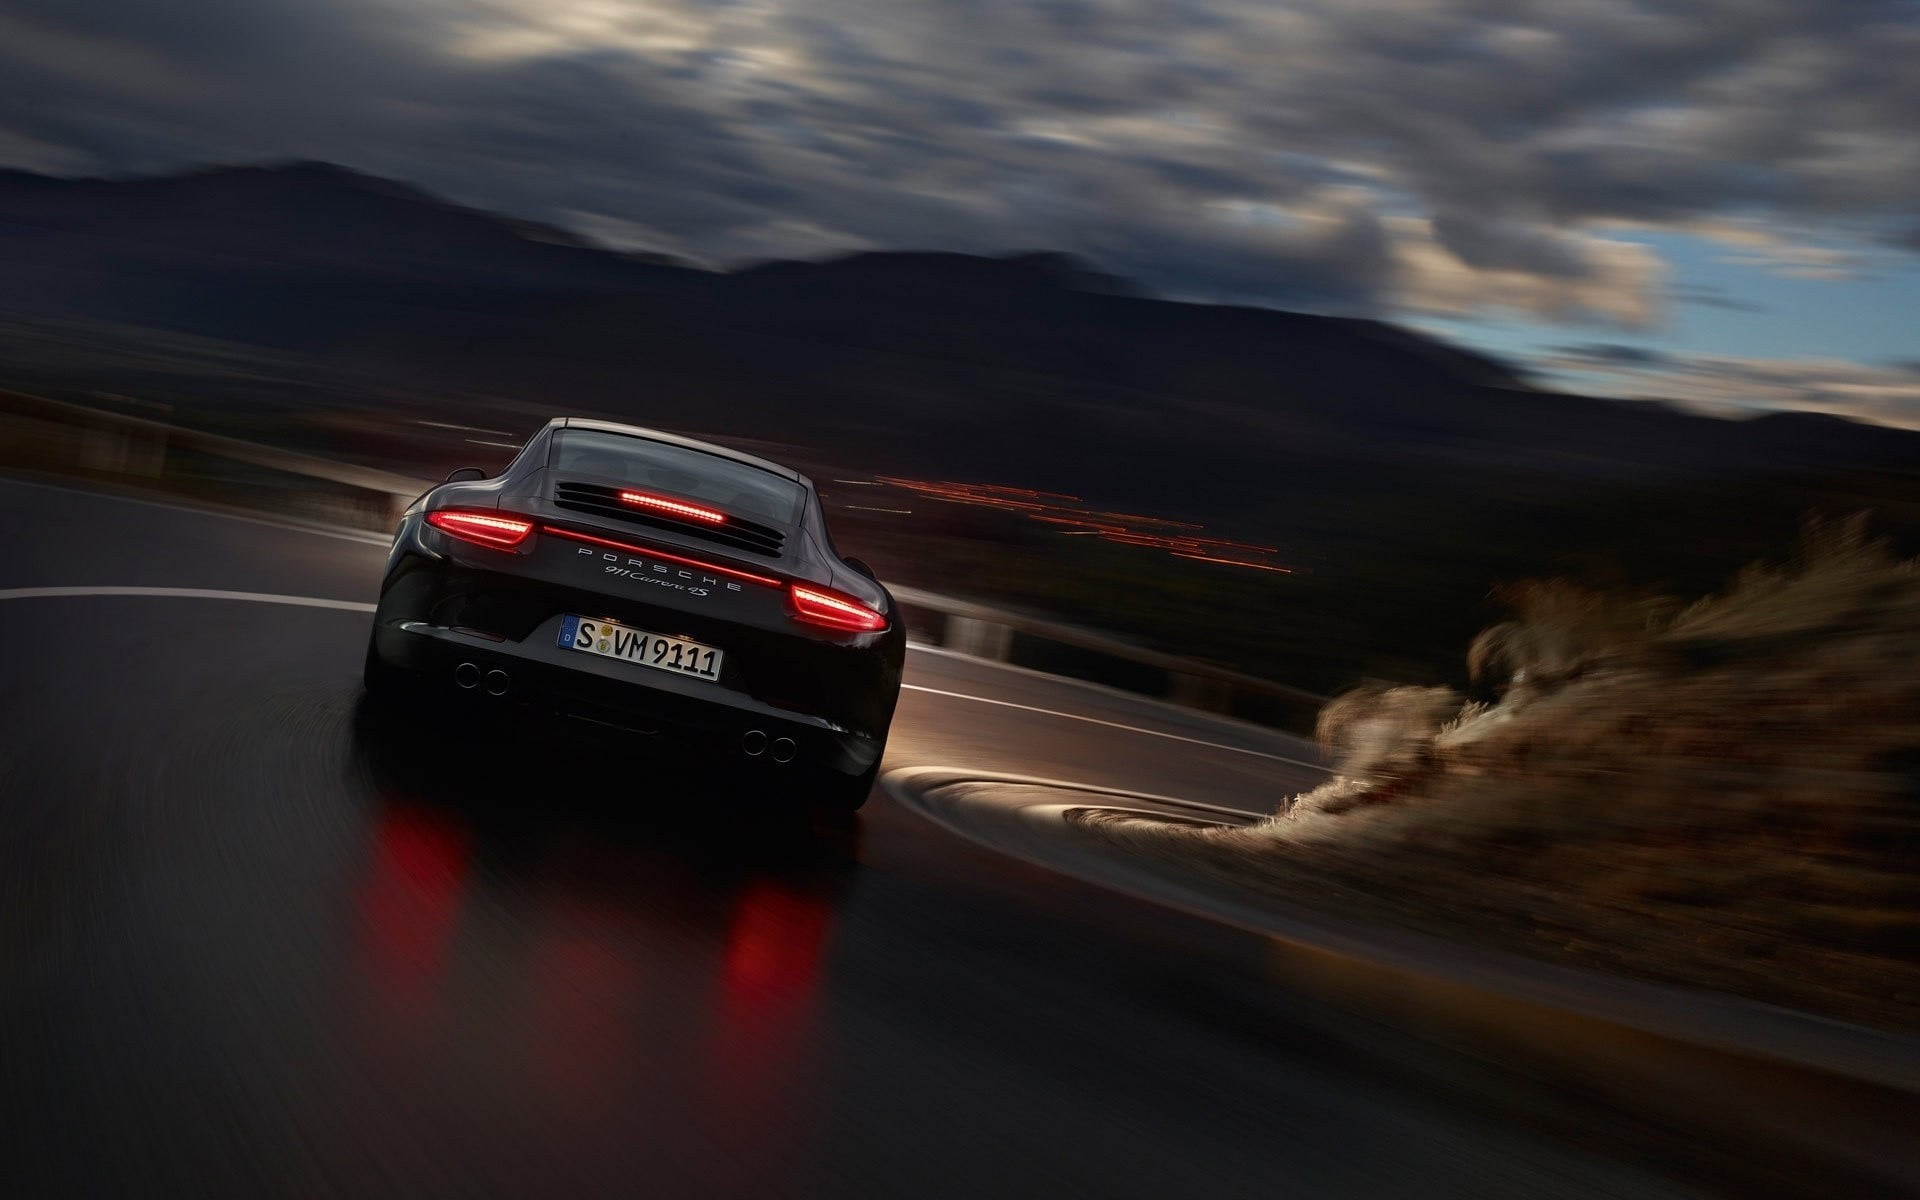 Dành cho những người yêu thích sự sang trọng và đẳng cấp, hình nền Porsche 911 Carrera 4S sẽ là sự lựa chọn hoàn hảo. Với đường nét không thể hoàn thiện hơn, chiếc xe màu đen này chắc chắn sẽ khiến bạn thích thú.